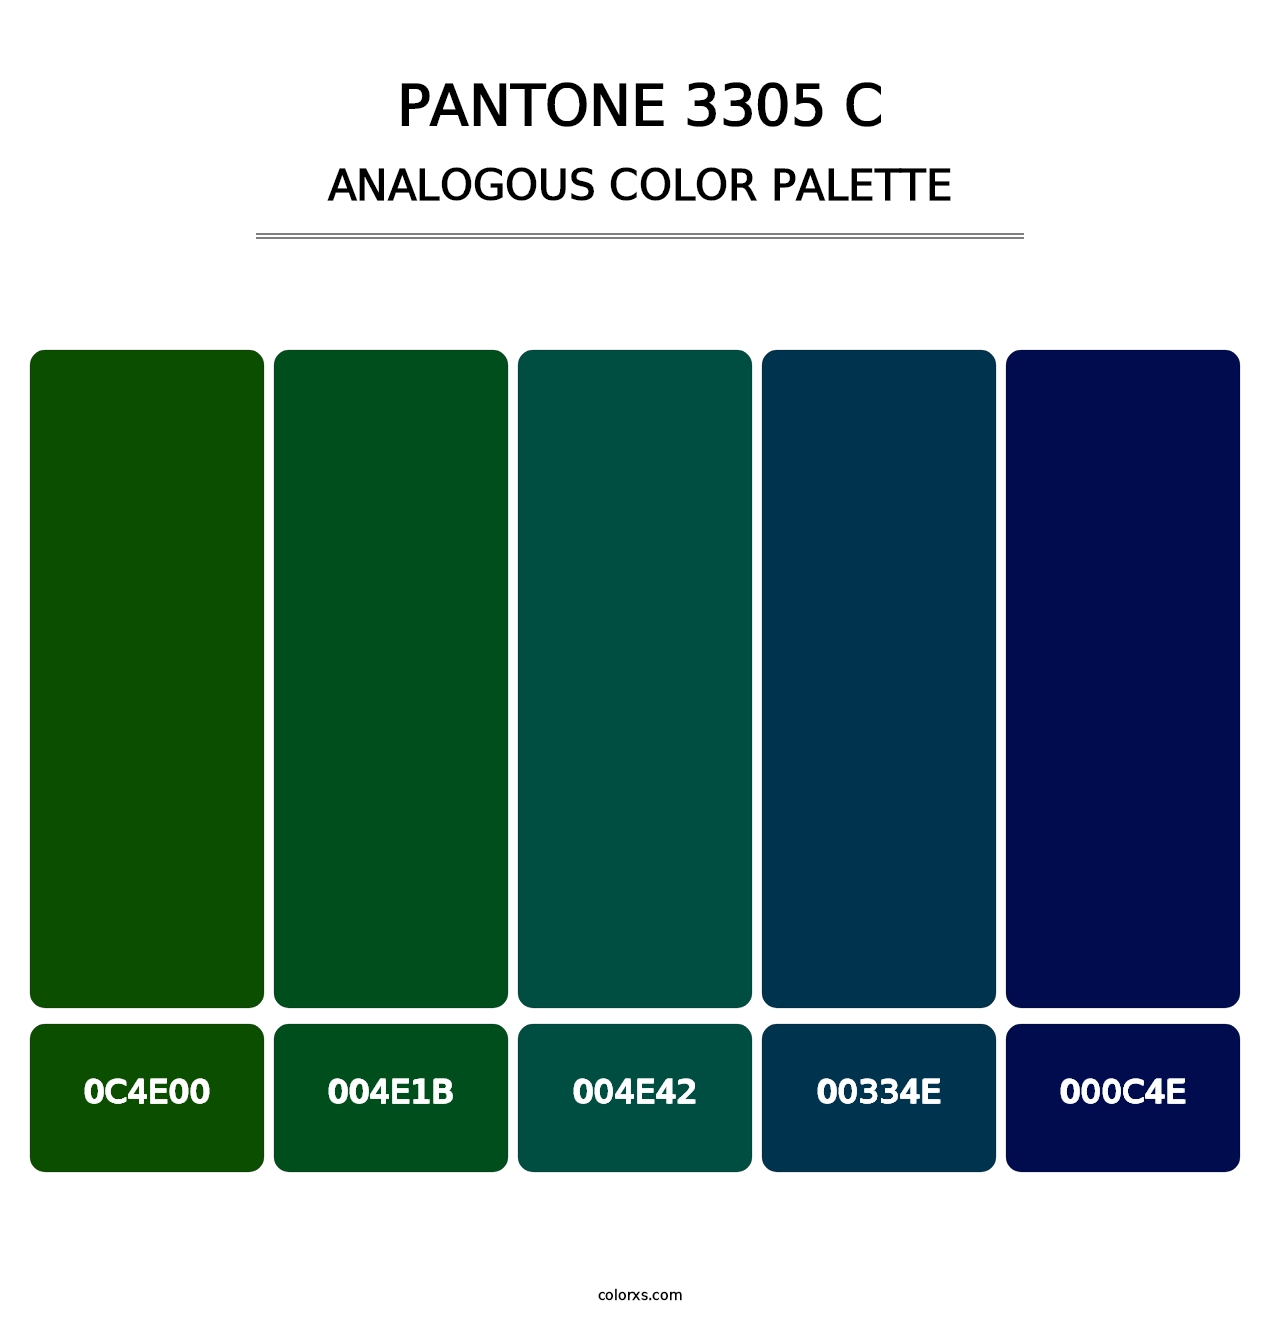 PANTONE 3305 C - Analogous Color Palette